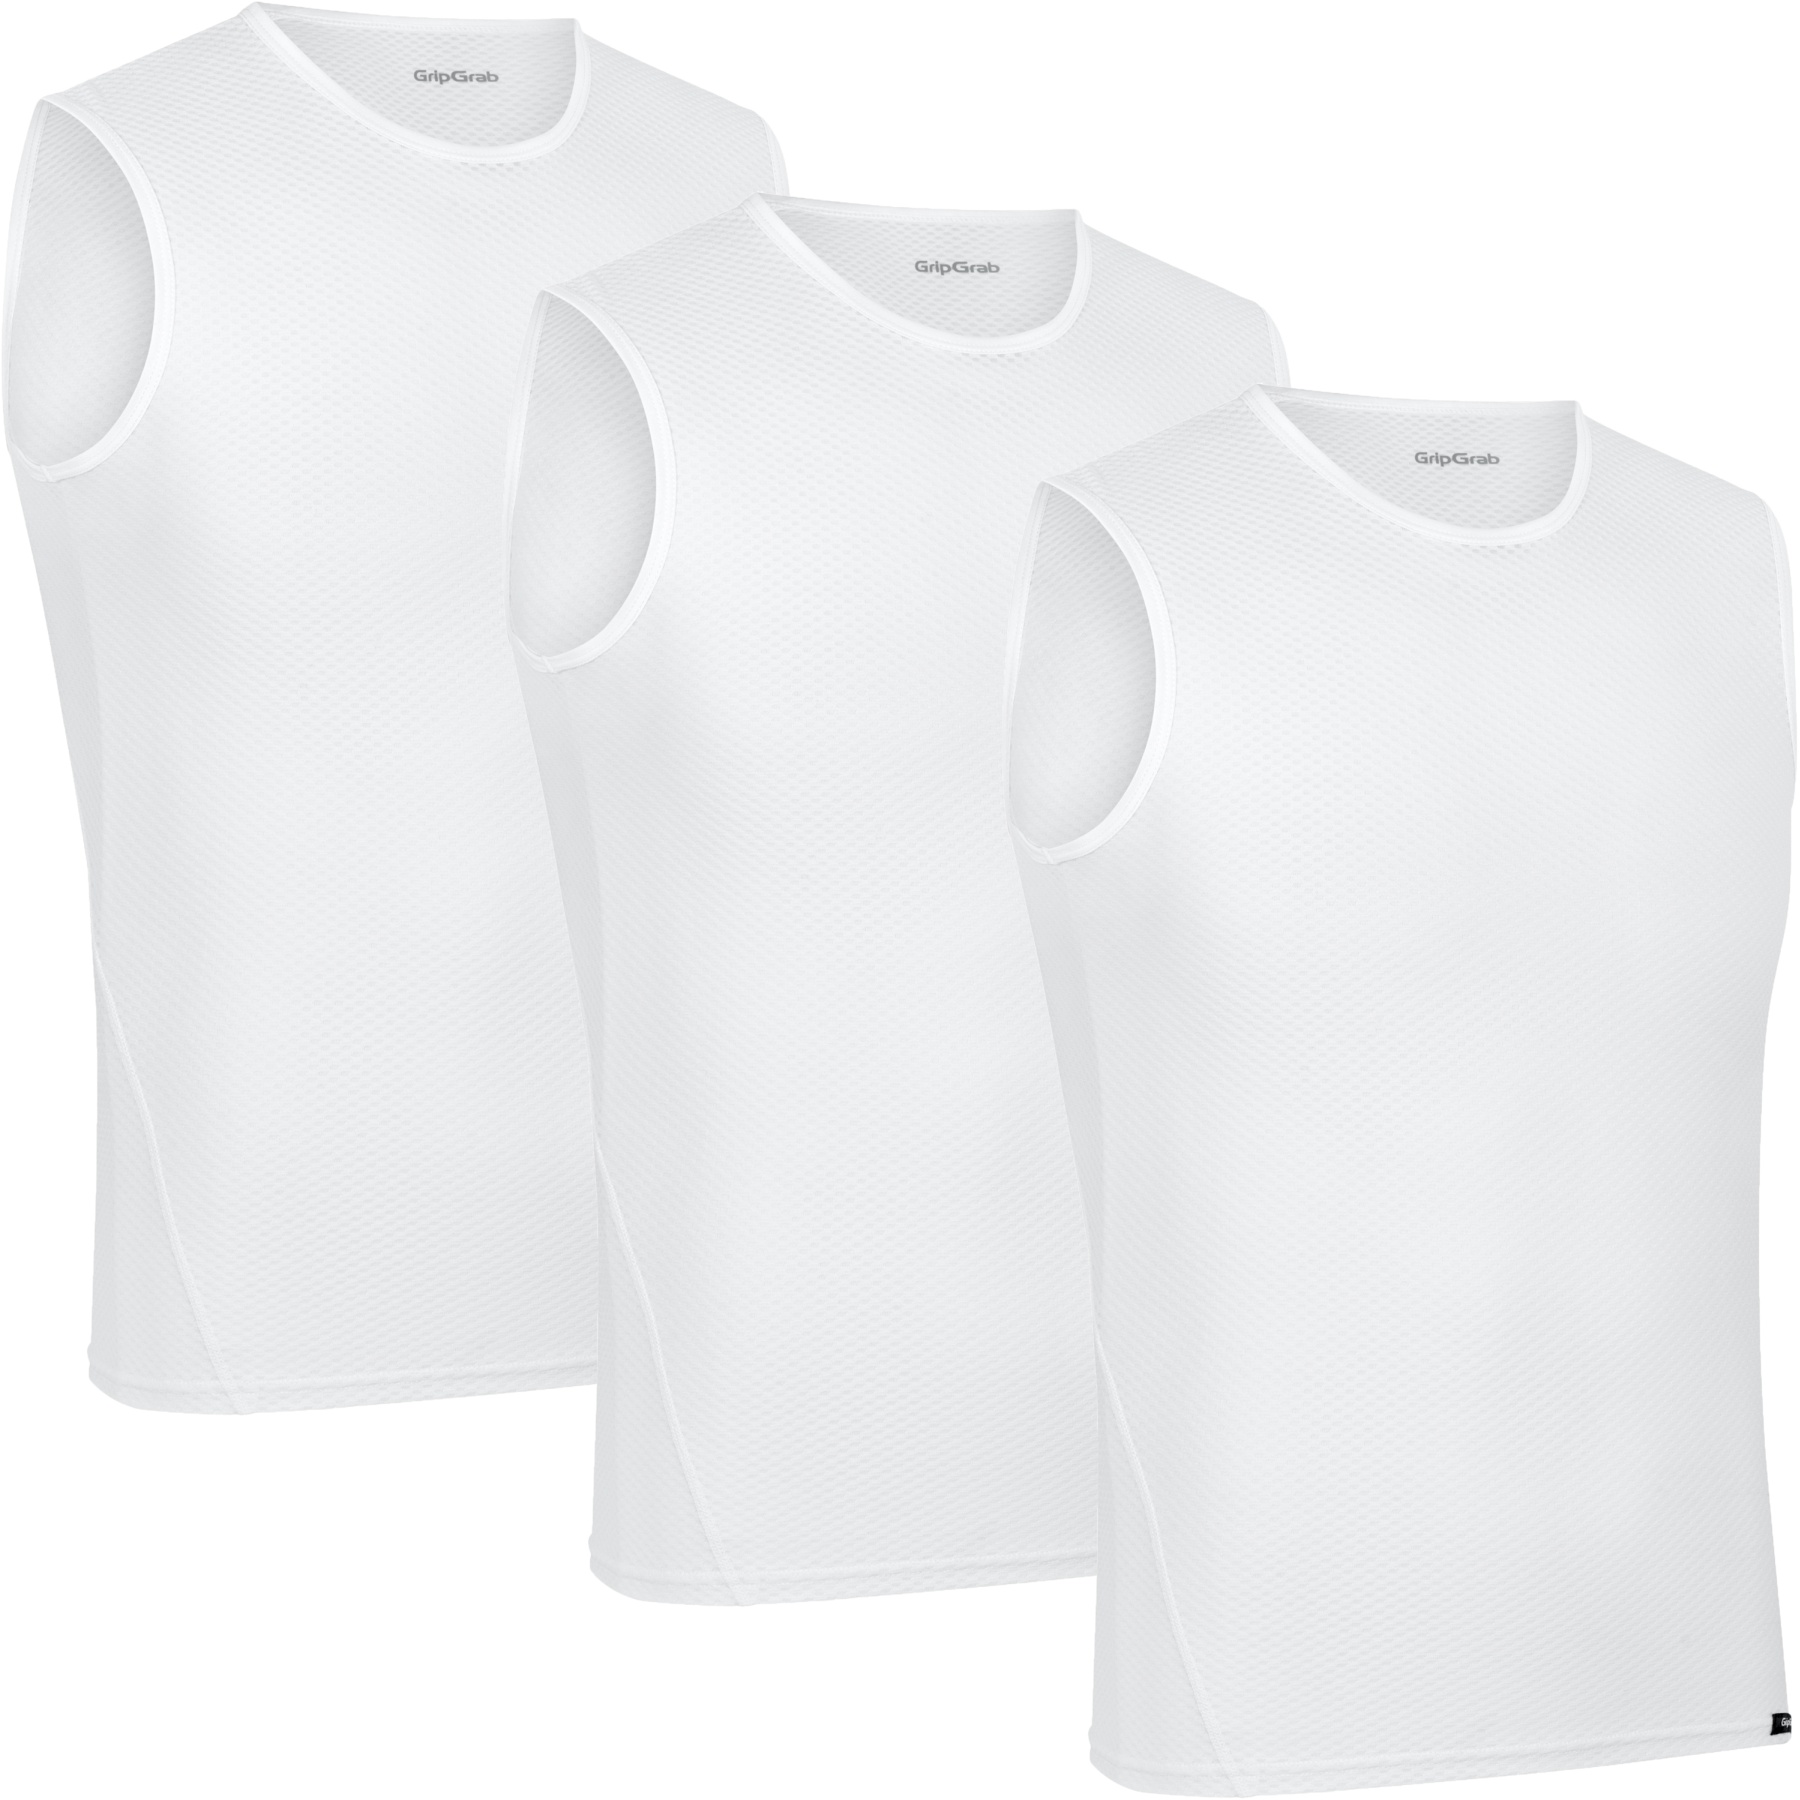 Produktbild von GripGrab Ultralight Mesh Unterhemd Ärmellos 3PACK - White